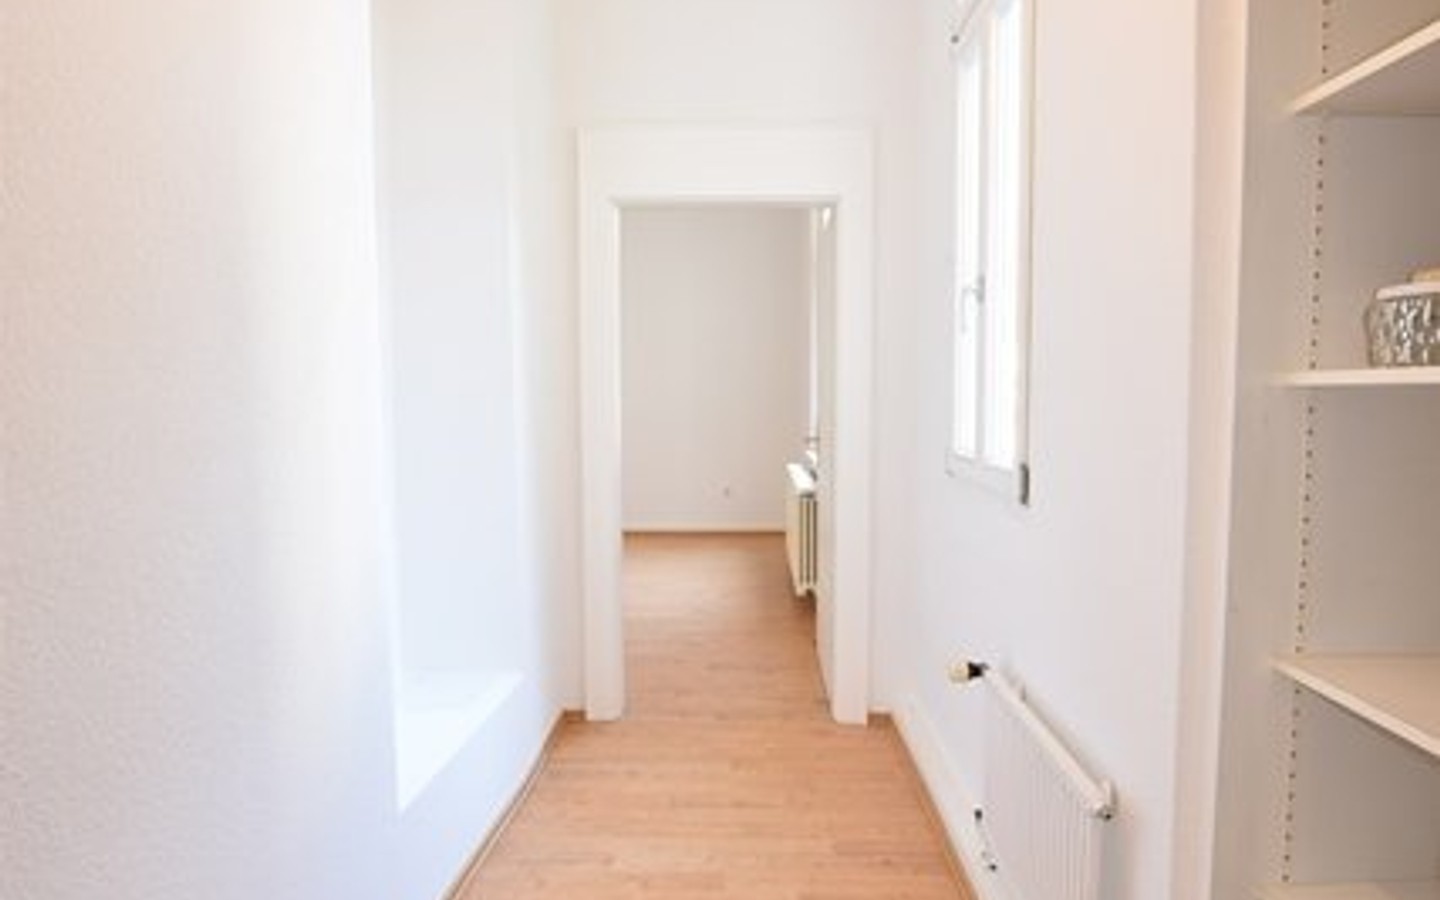 Durchgang zum Schlafzimmer - Heidelberg Weststadt: Stilvolle Fünfzimmerwohnung mit Balkon